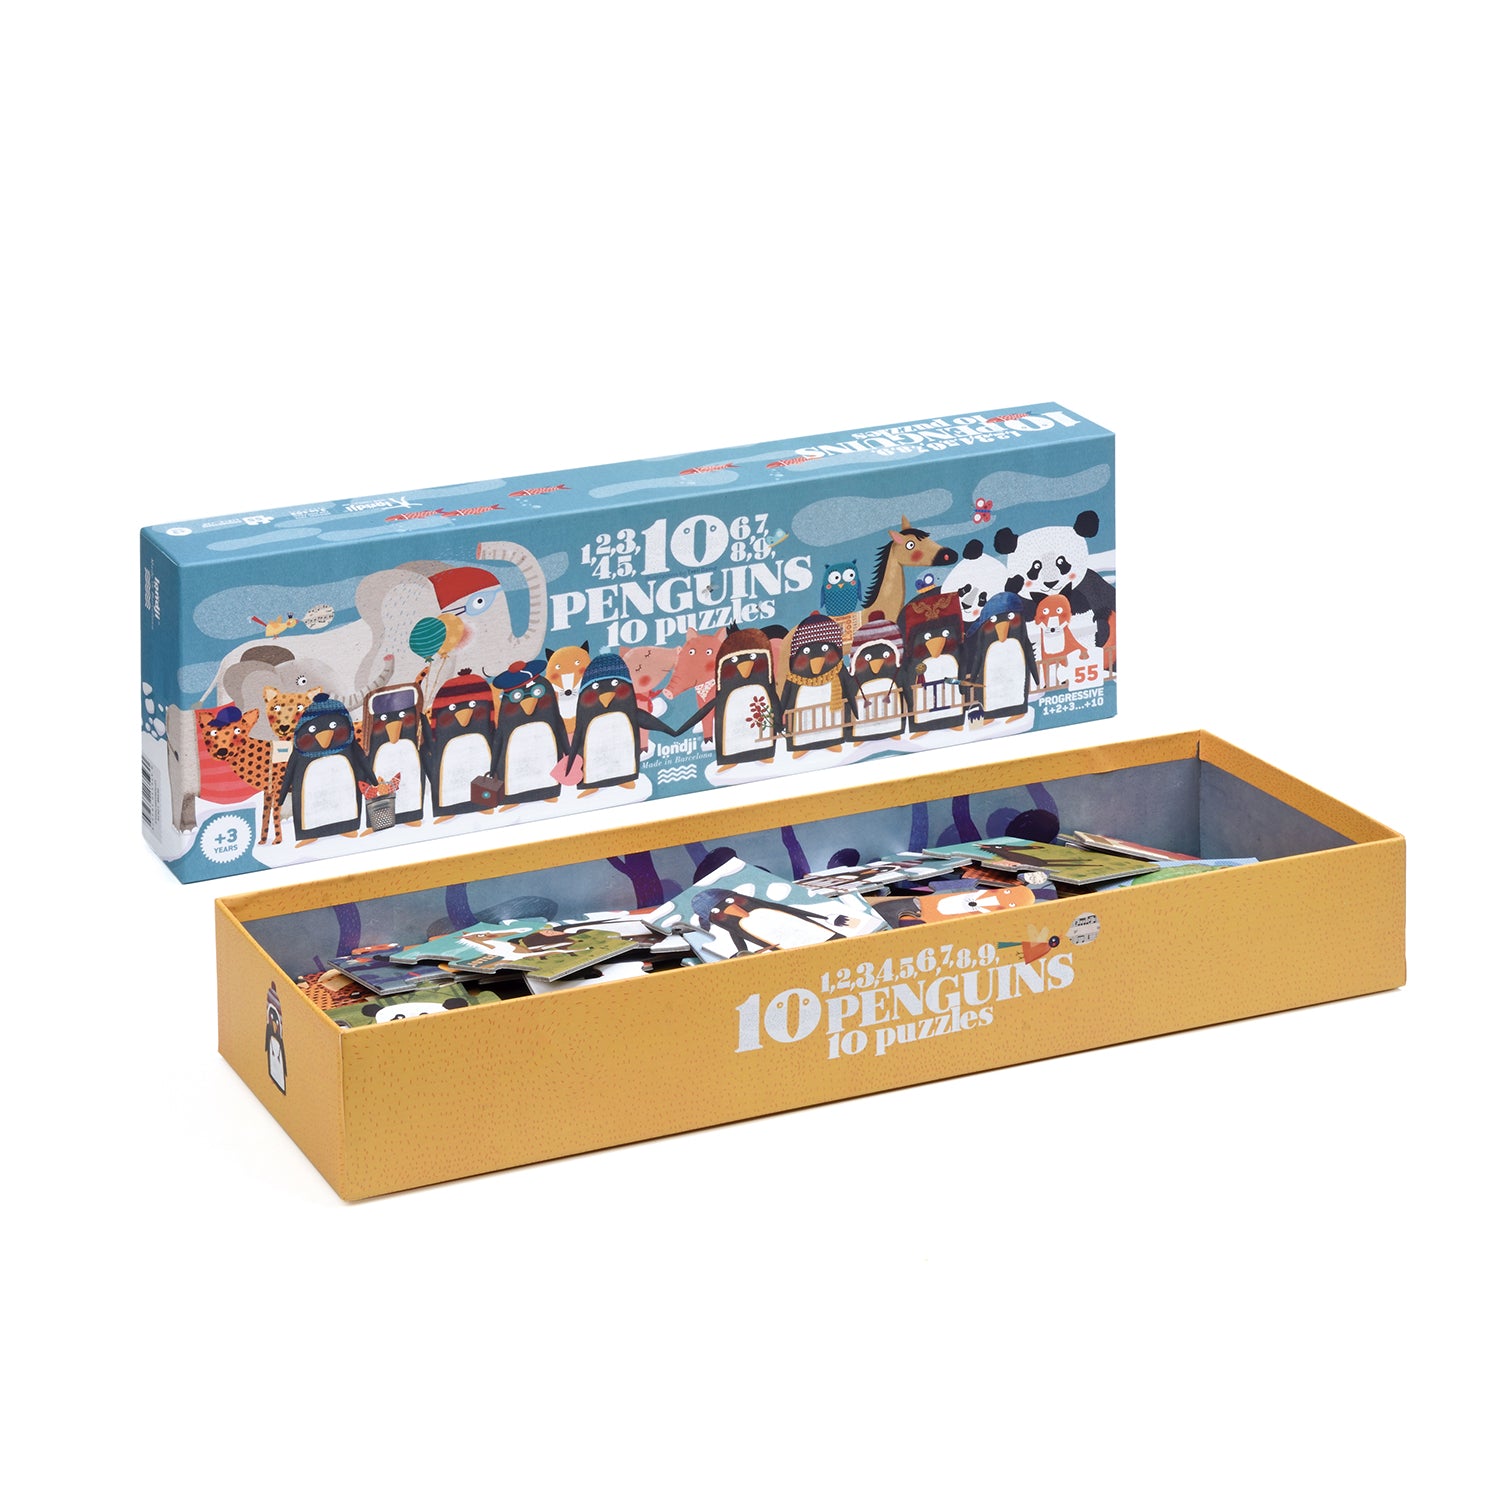 Puzzle 10 penguins